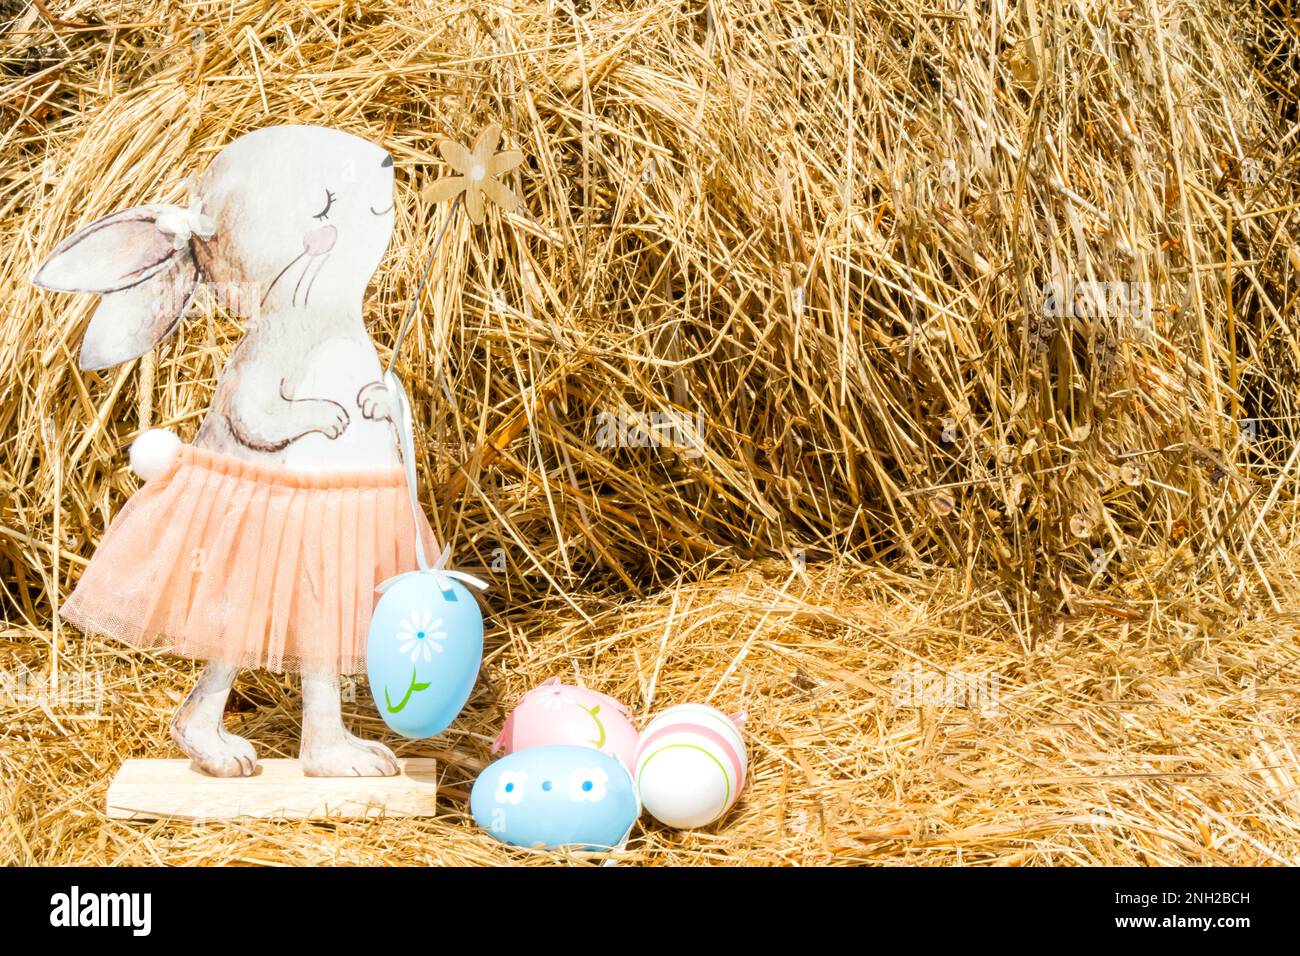 Un coniglio di legno in una bella gonna su fondo di fieno con uova di Pasqua dipinte. Pasqua, una cartolina con un posto per il testo. Foto di alta qualità Foto Stock